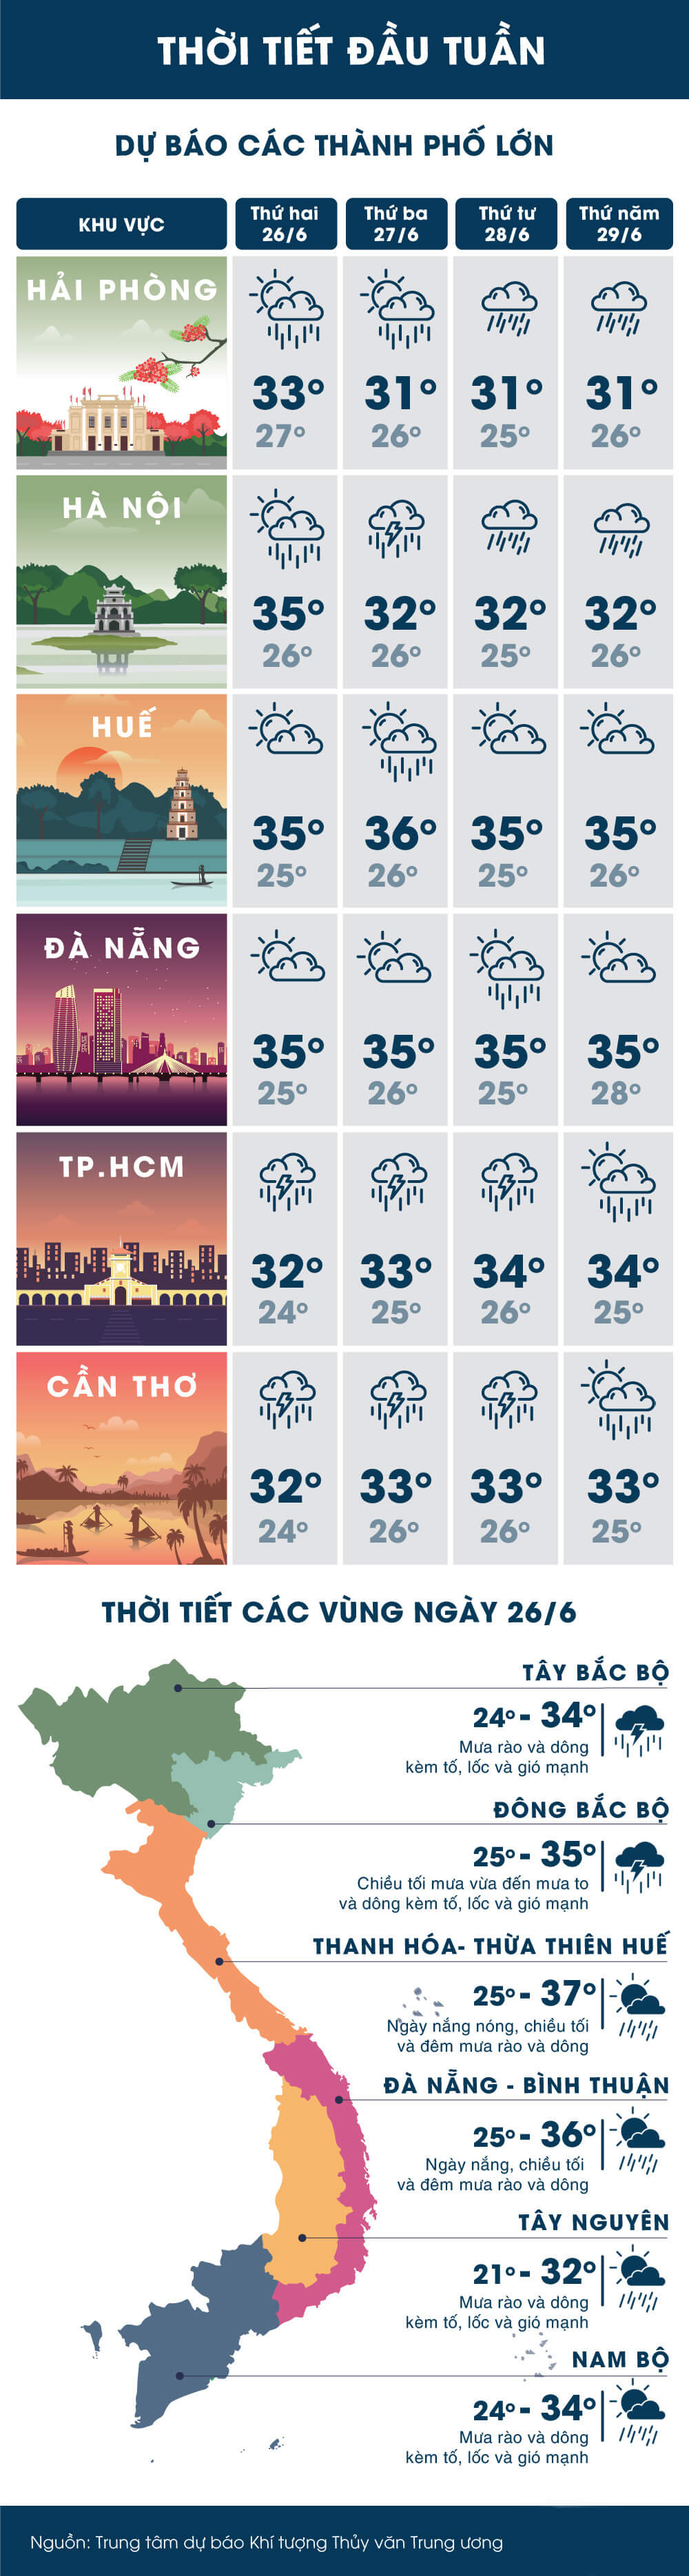 Sài Gòn và Hà Nội cùng mưa lớn, nguy cơ ngập giờ tan tầm